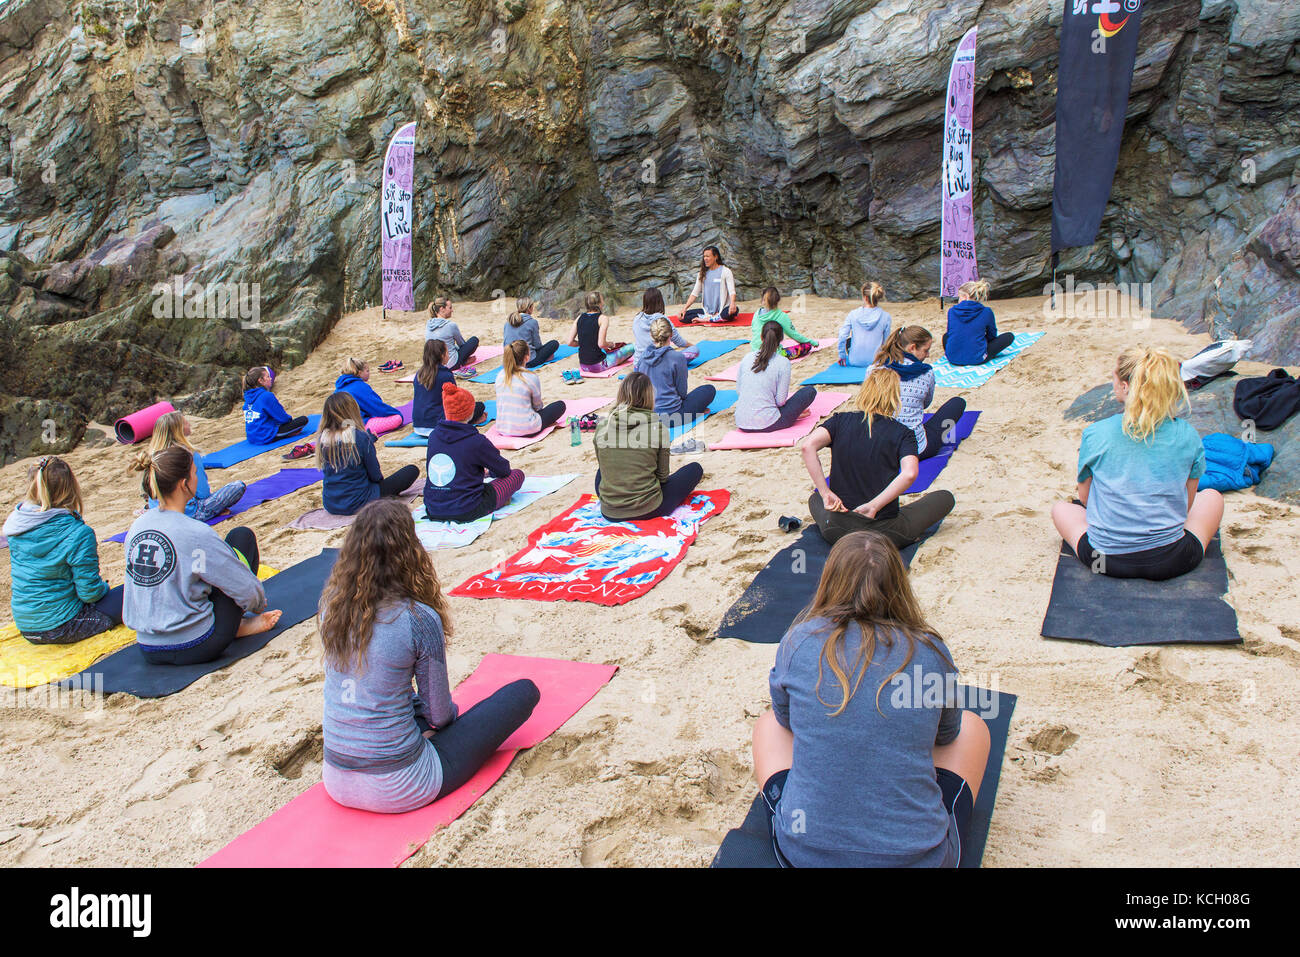 Eine Gruppe Frauen Yoga am Strand - Surf Betty's Festival ein Festival in Newquay gehalten, die Frauen durch Fitness und Surfen. Stockfoto